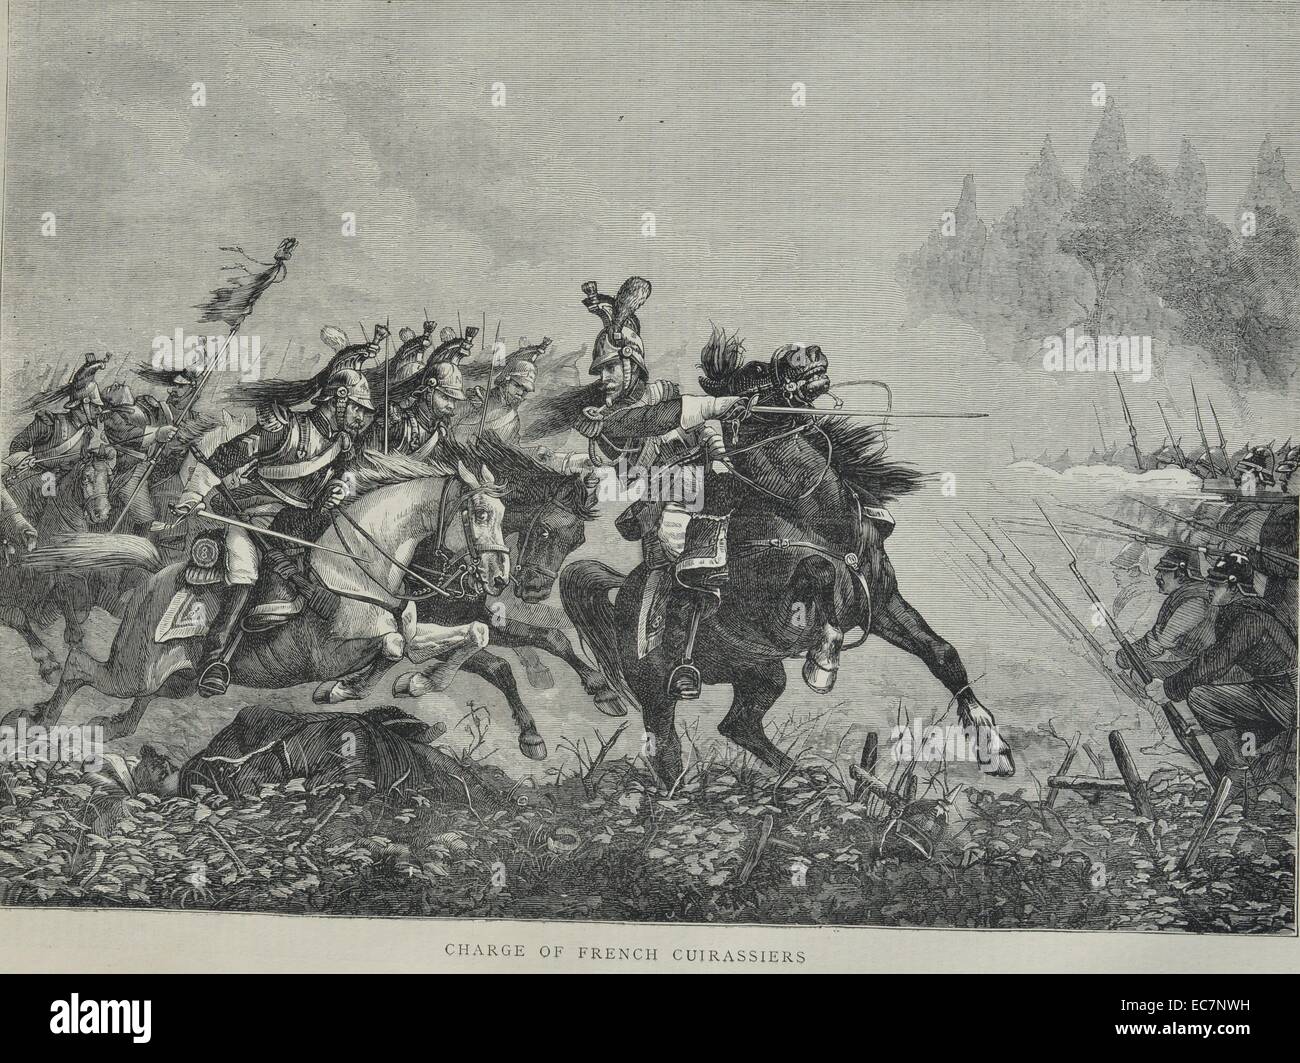 La gravure illustre charge de cuirassiers français - un des soldats de cavalerie équipée d'armures et d'armes à feu, les premières apparaissant à la fin du 15ème siècle l'Europe. Datée 1870 Banque D'Images